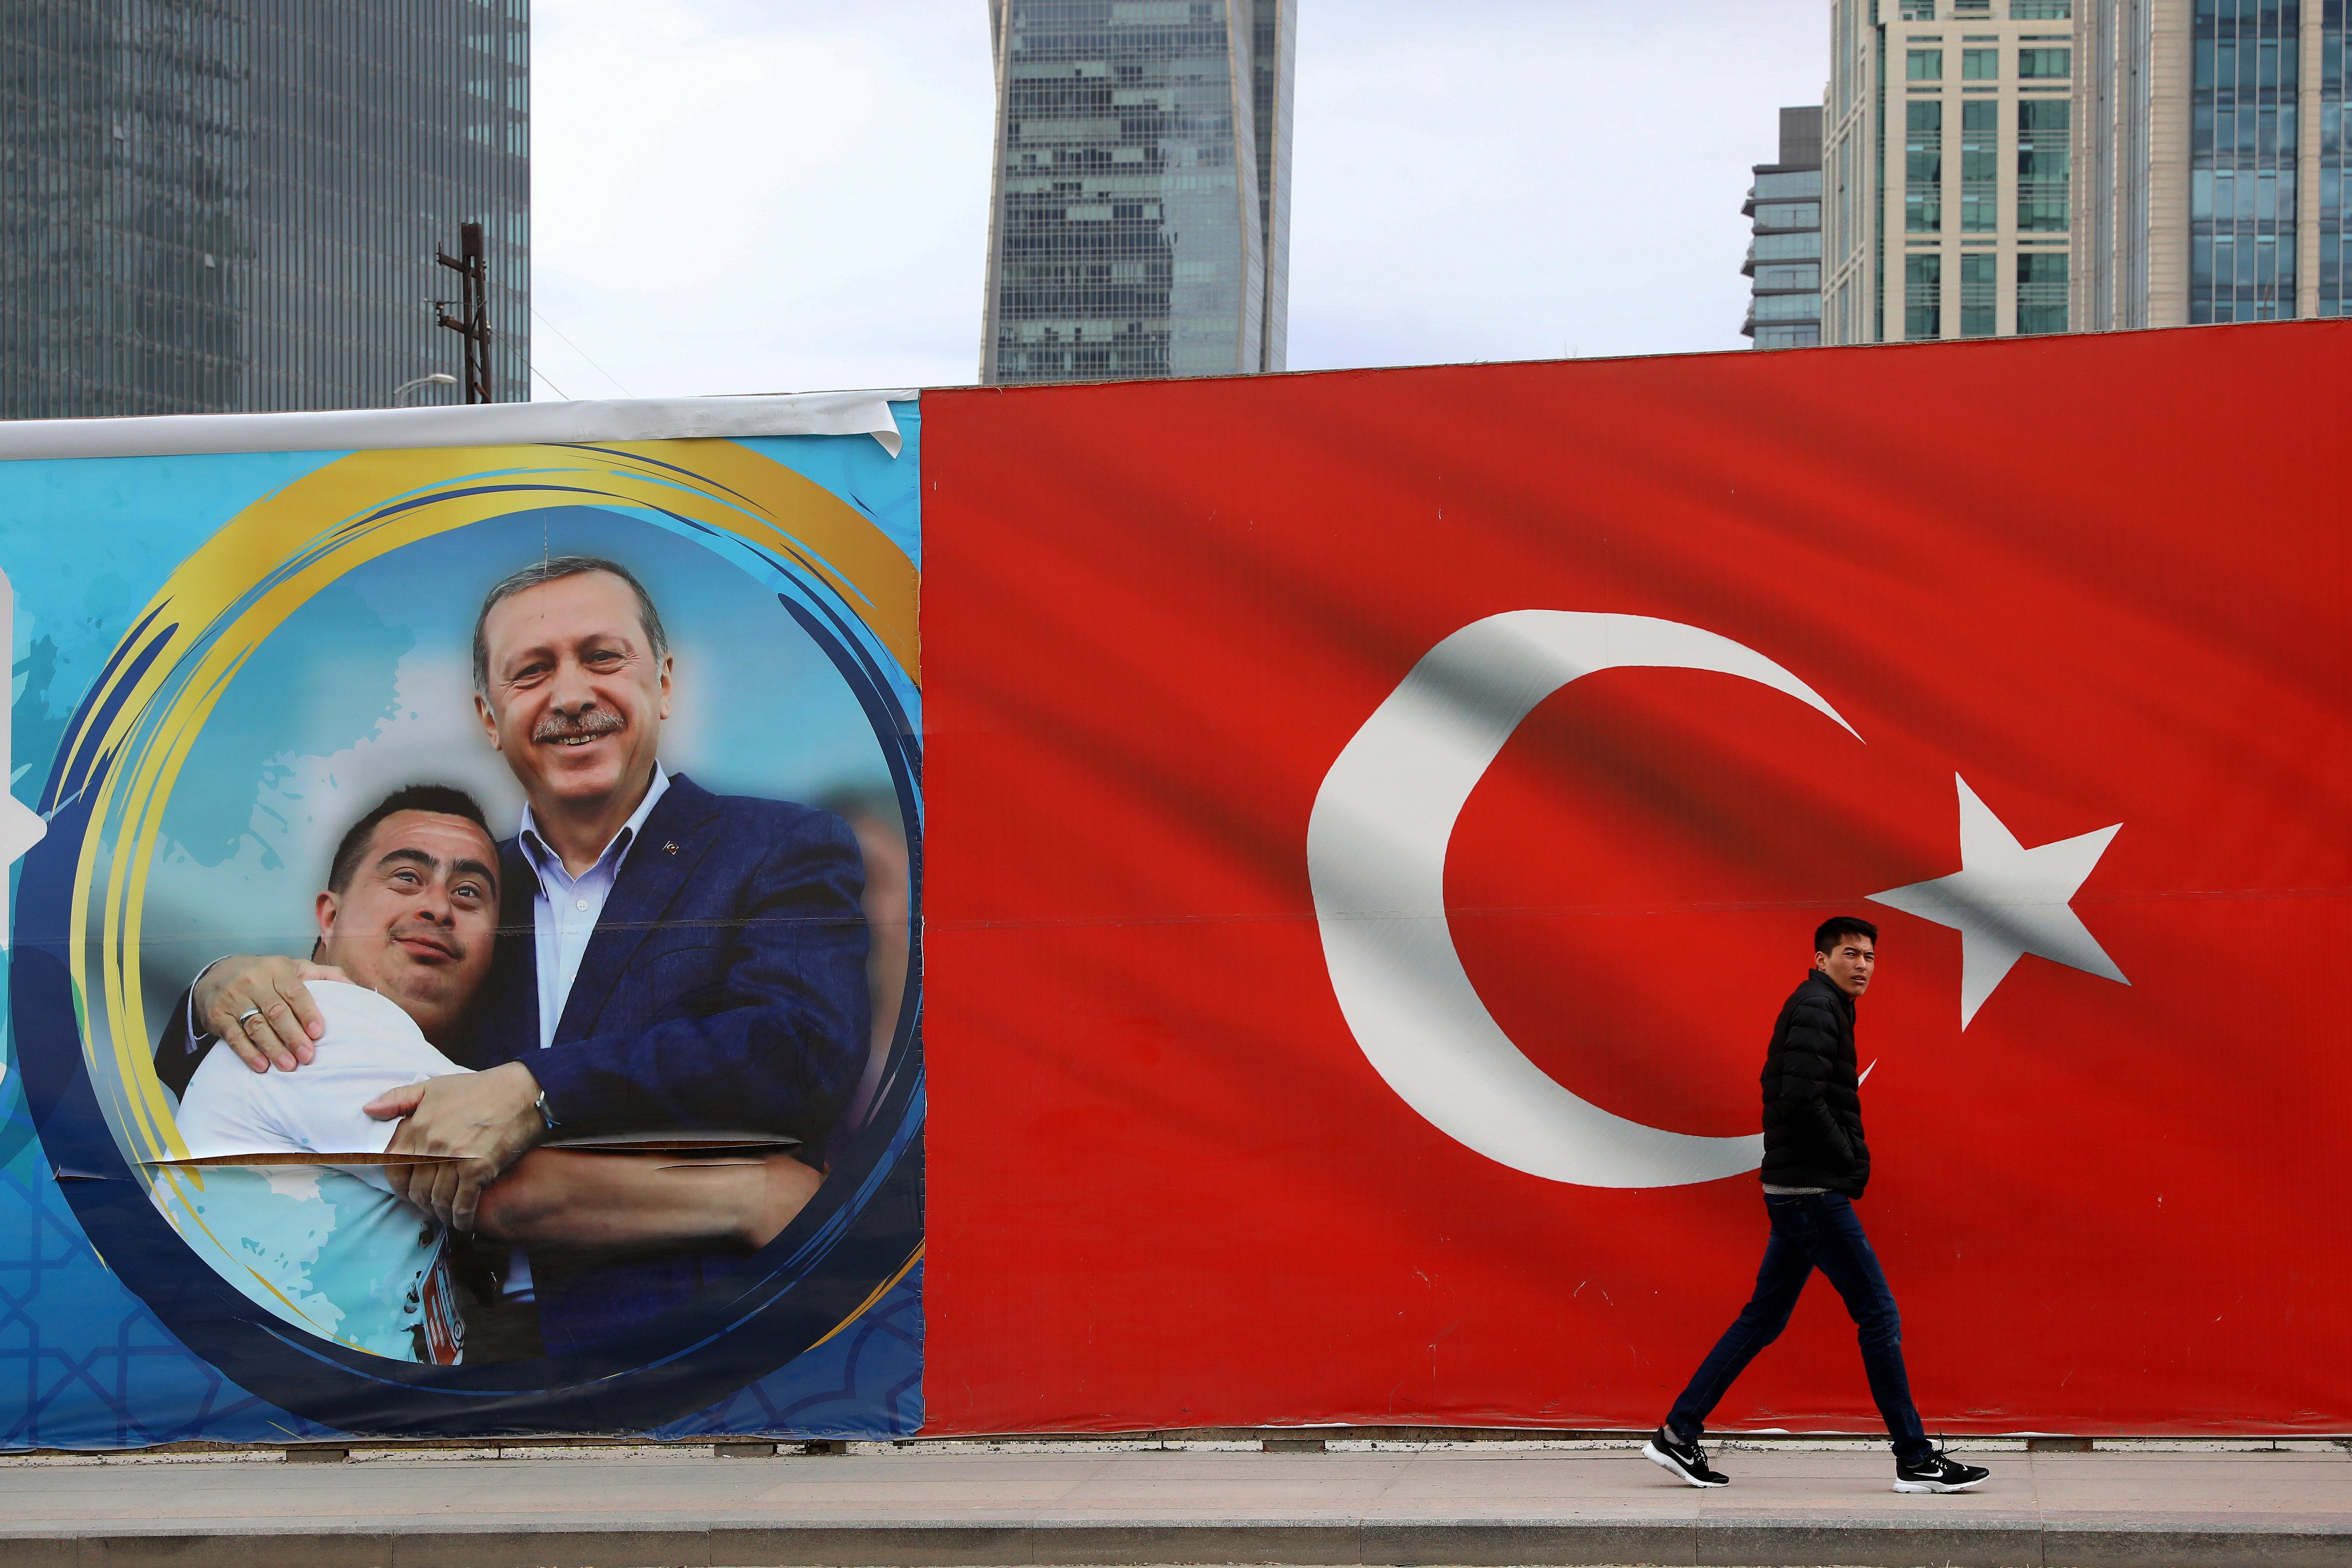 A man walks by a Turkish flag and a poster showing the Turkey's President Recep Tayyip Erdogan with a boy in Ankara, Turkey on Mar. 31, 2019. (Ali Unal&mdash;AP)